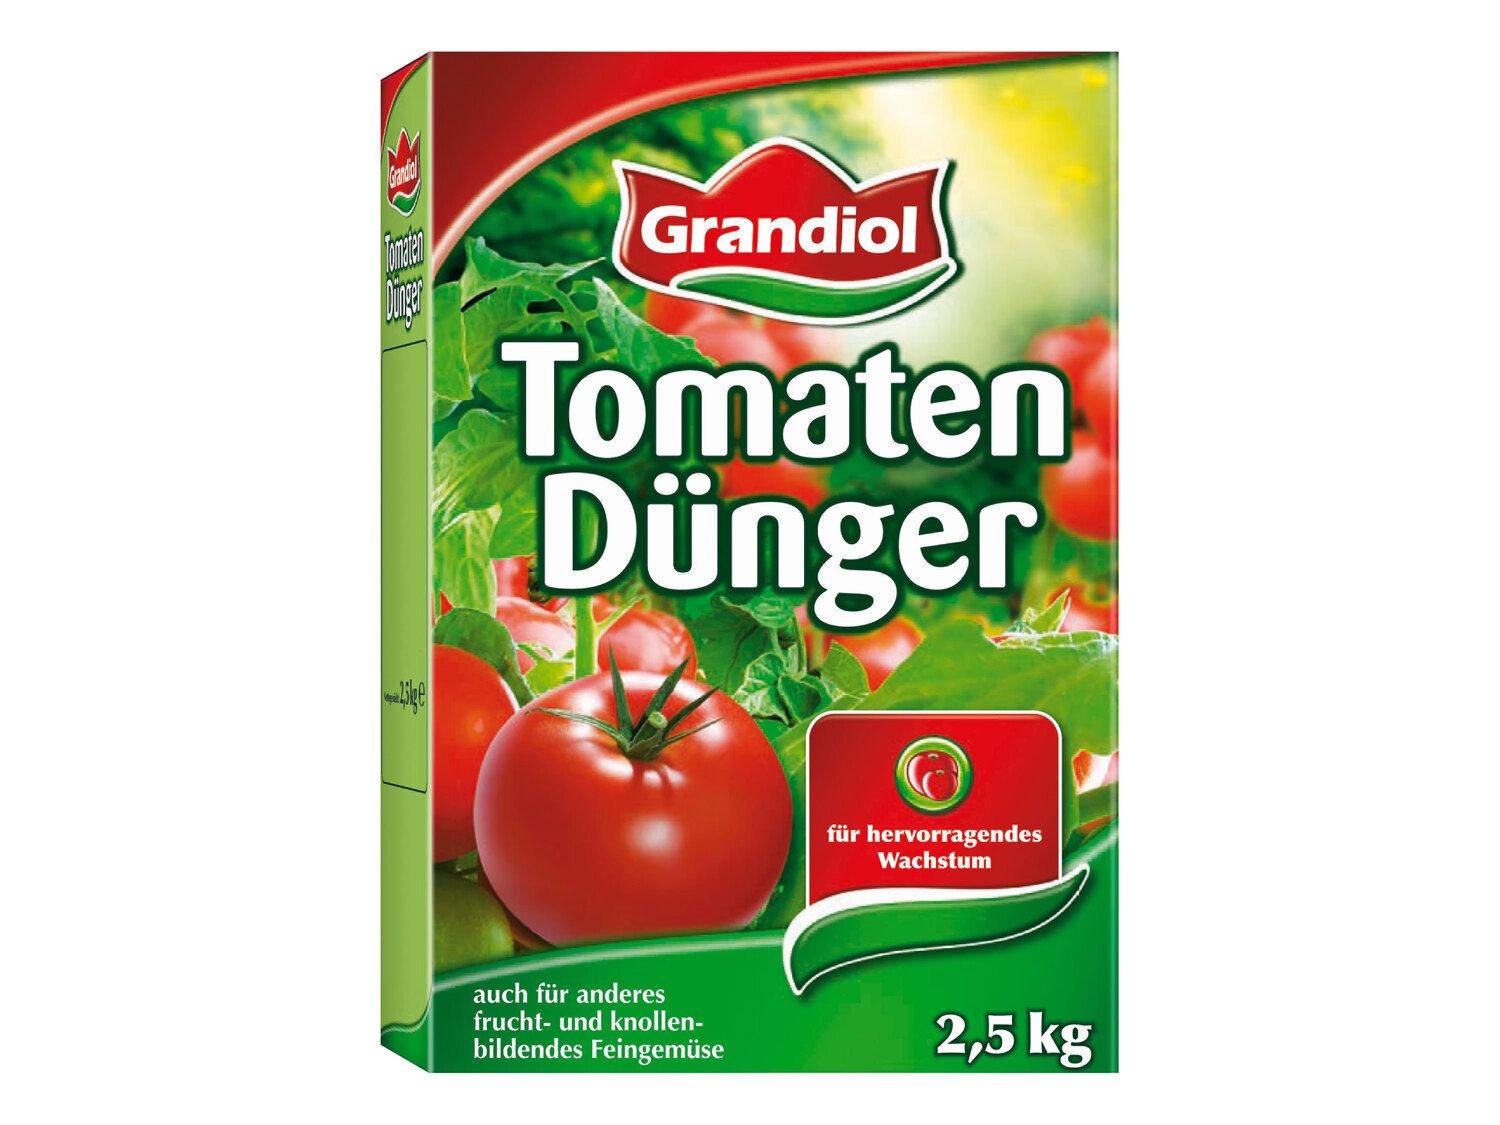 Tomatendünger - Lidl Grandiol Deutschland